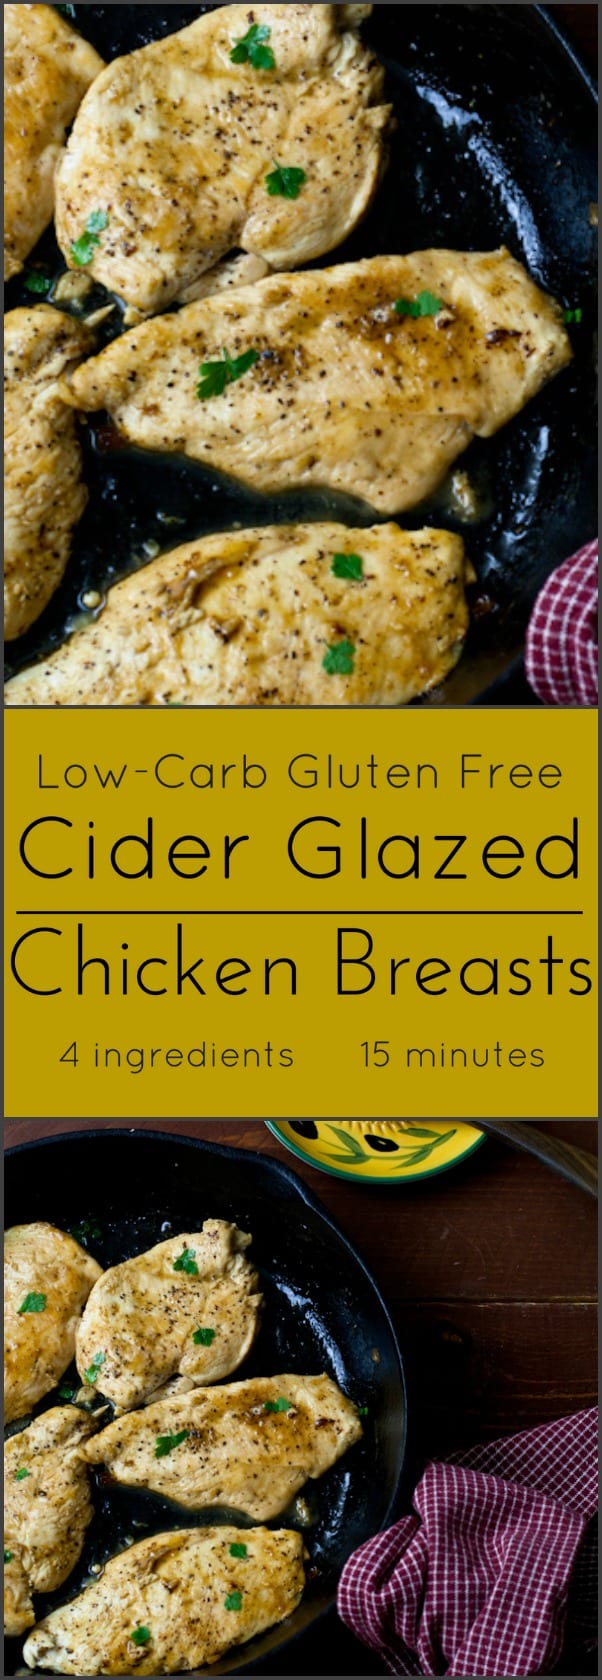 Chicken, Paleo, Low Carb, gluten free 